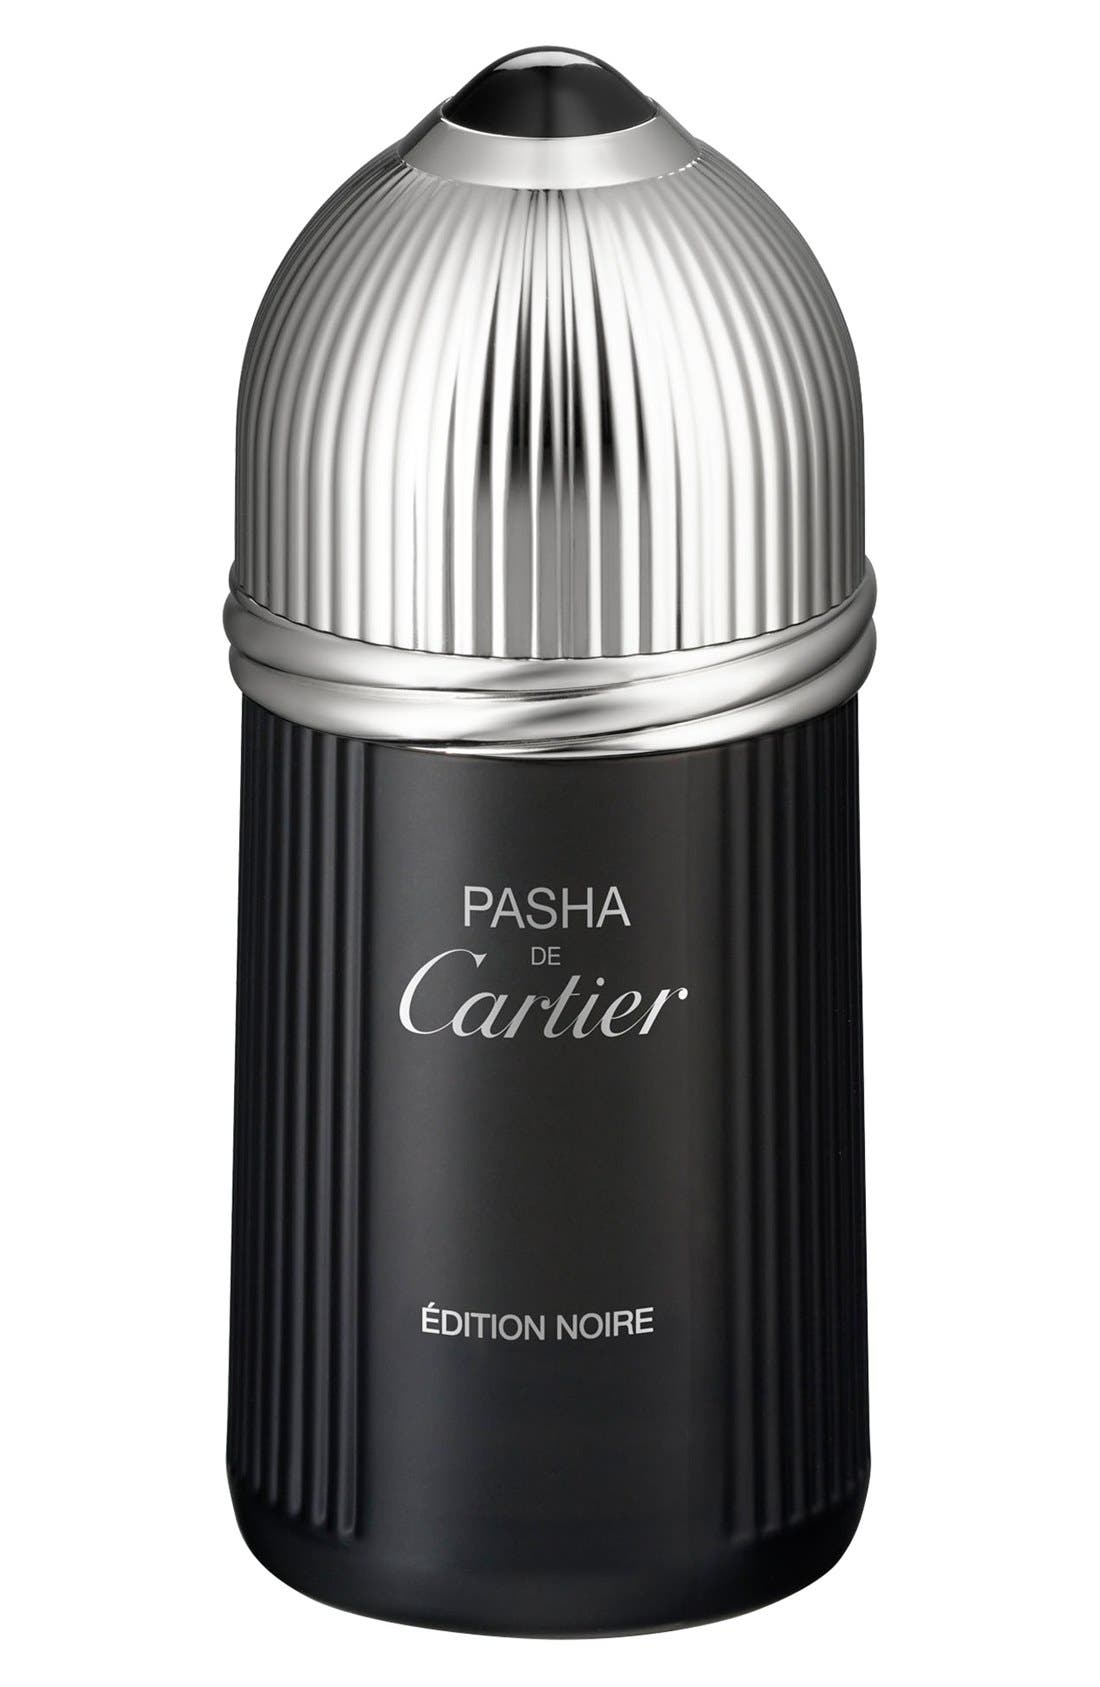 Pasha de Cartier Edition Noire Eau de Toilette at Nordstrom, Size 5.1 Oz